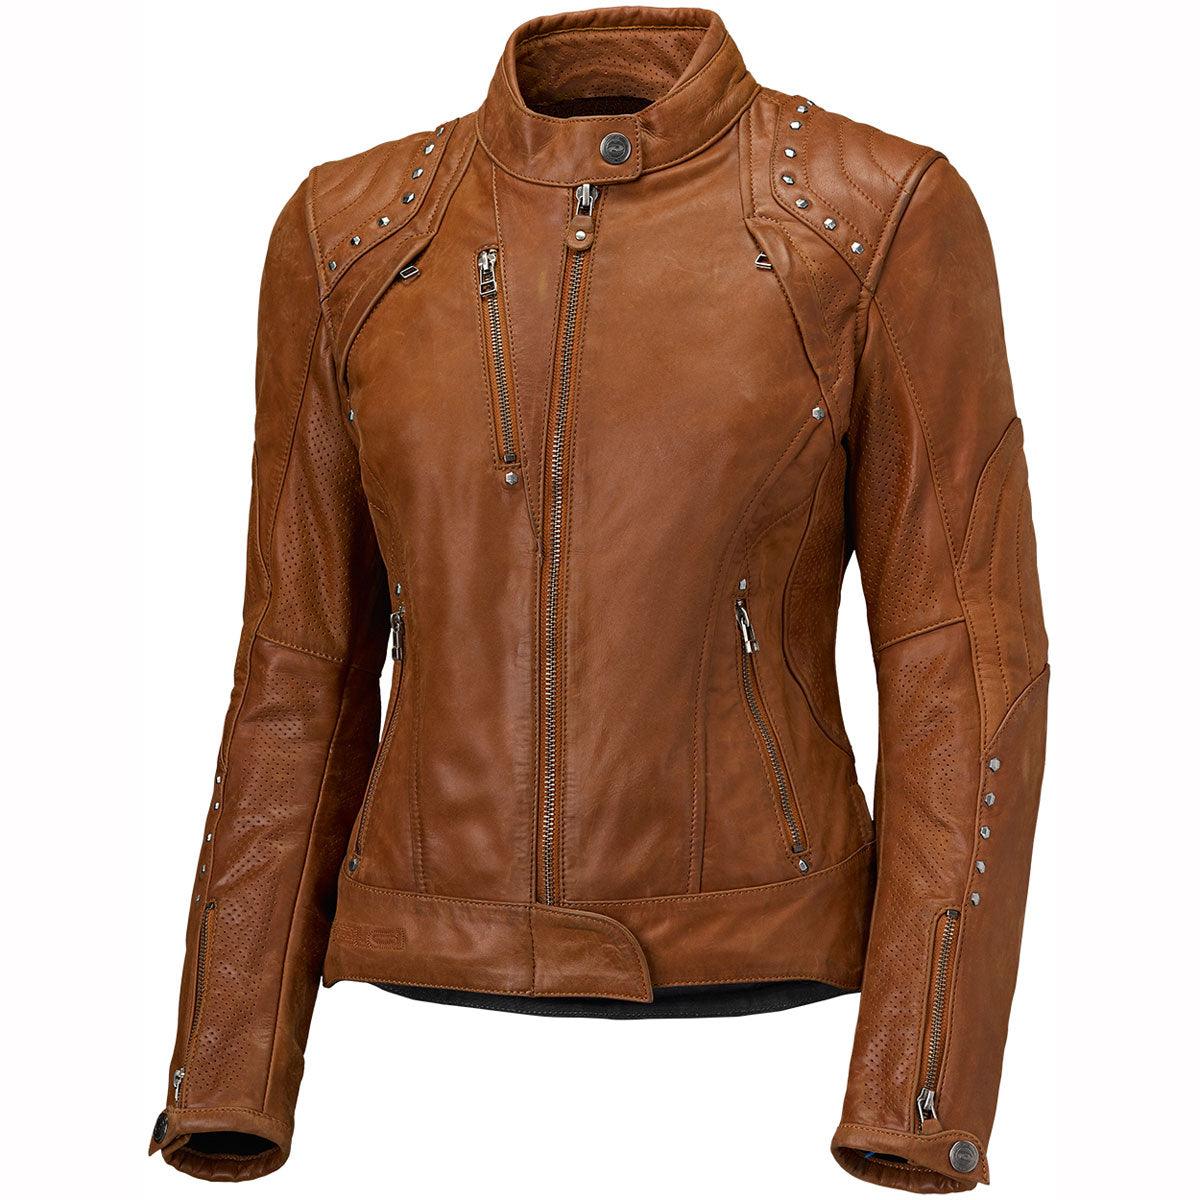 Held 5827 Asphalt Queen Leather Jacket Ladies Tan 46